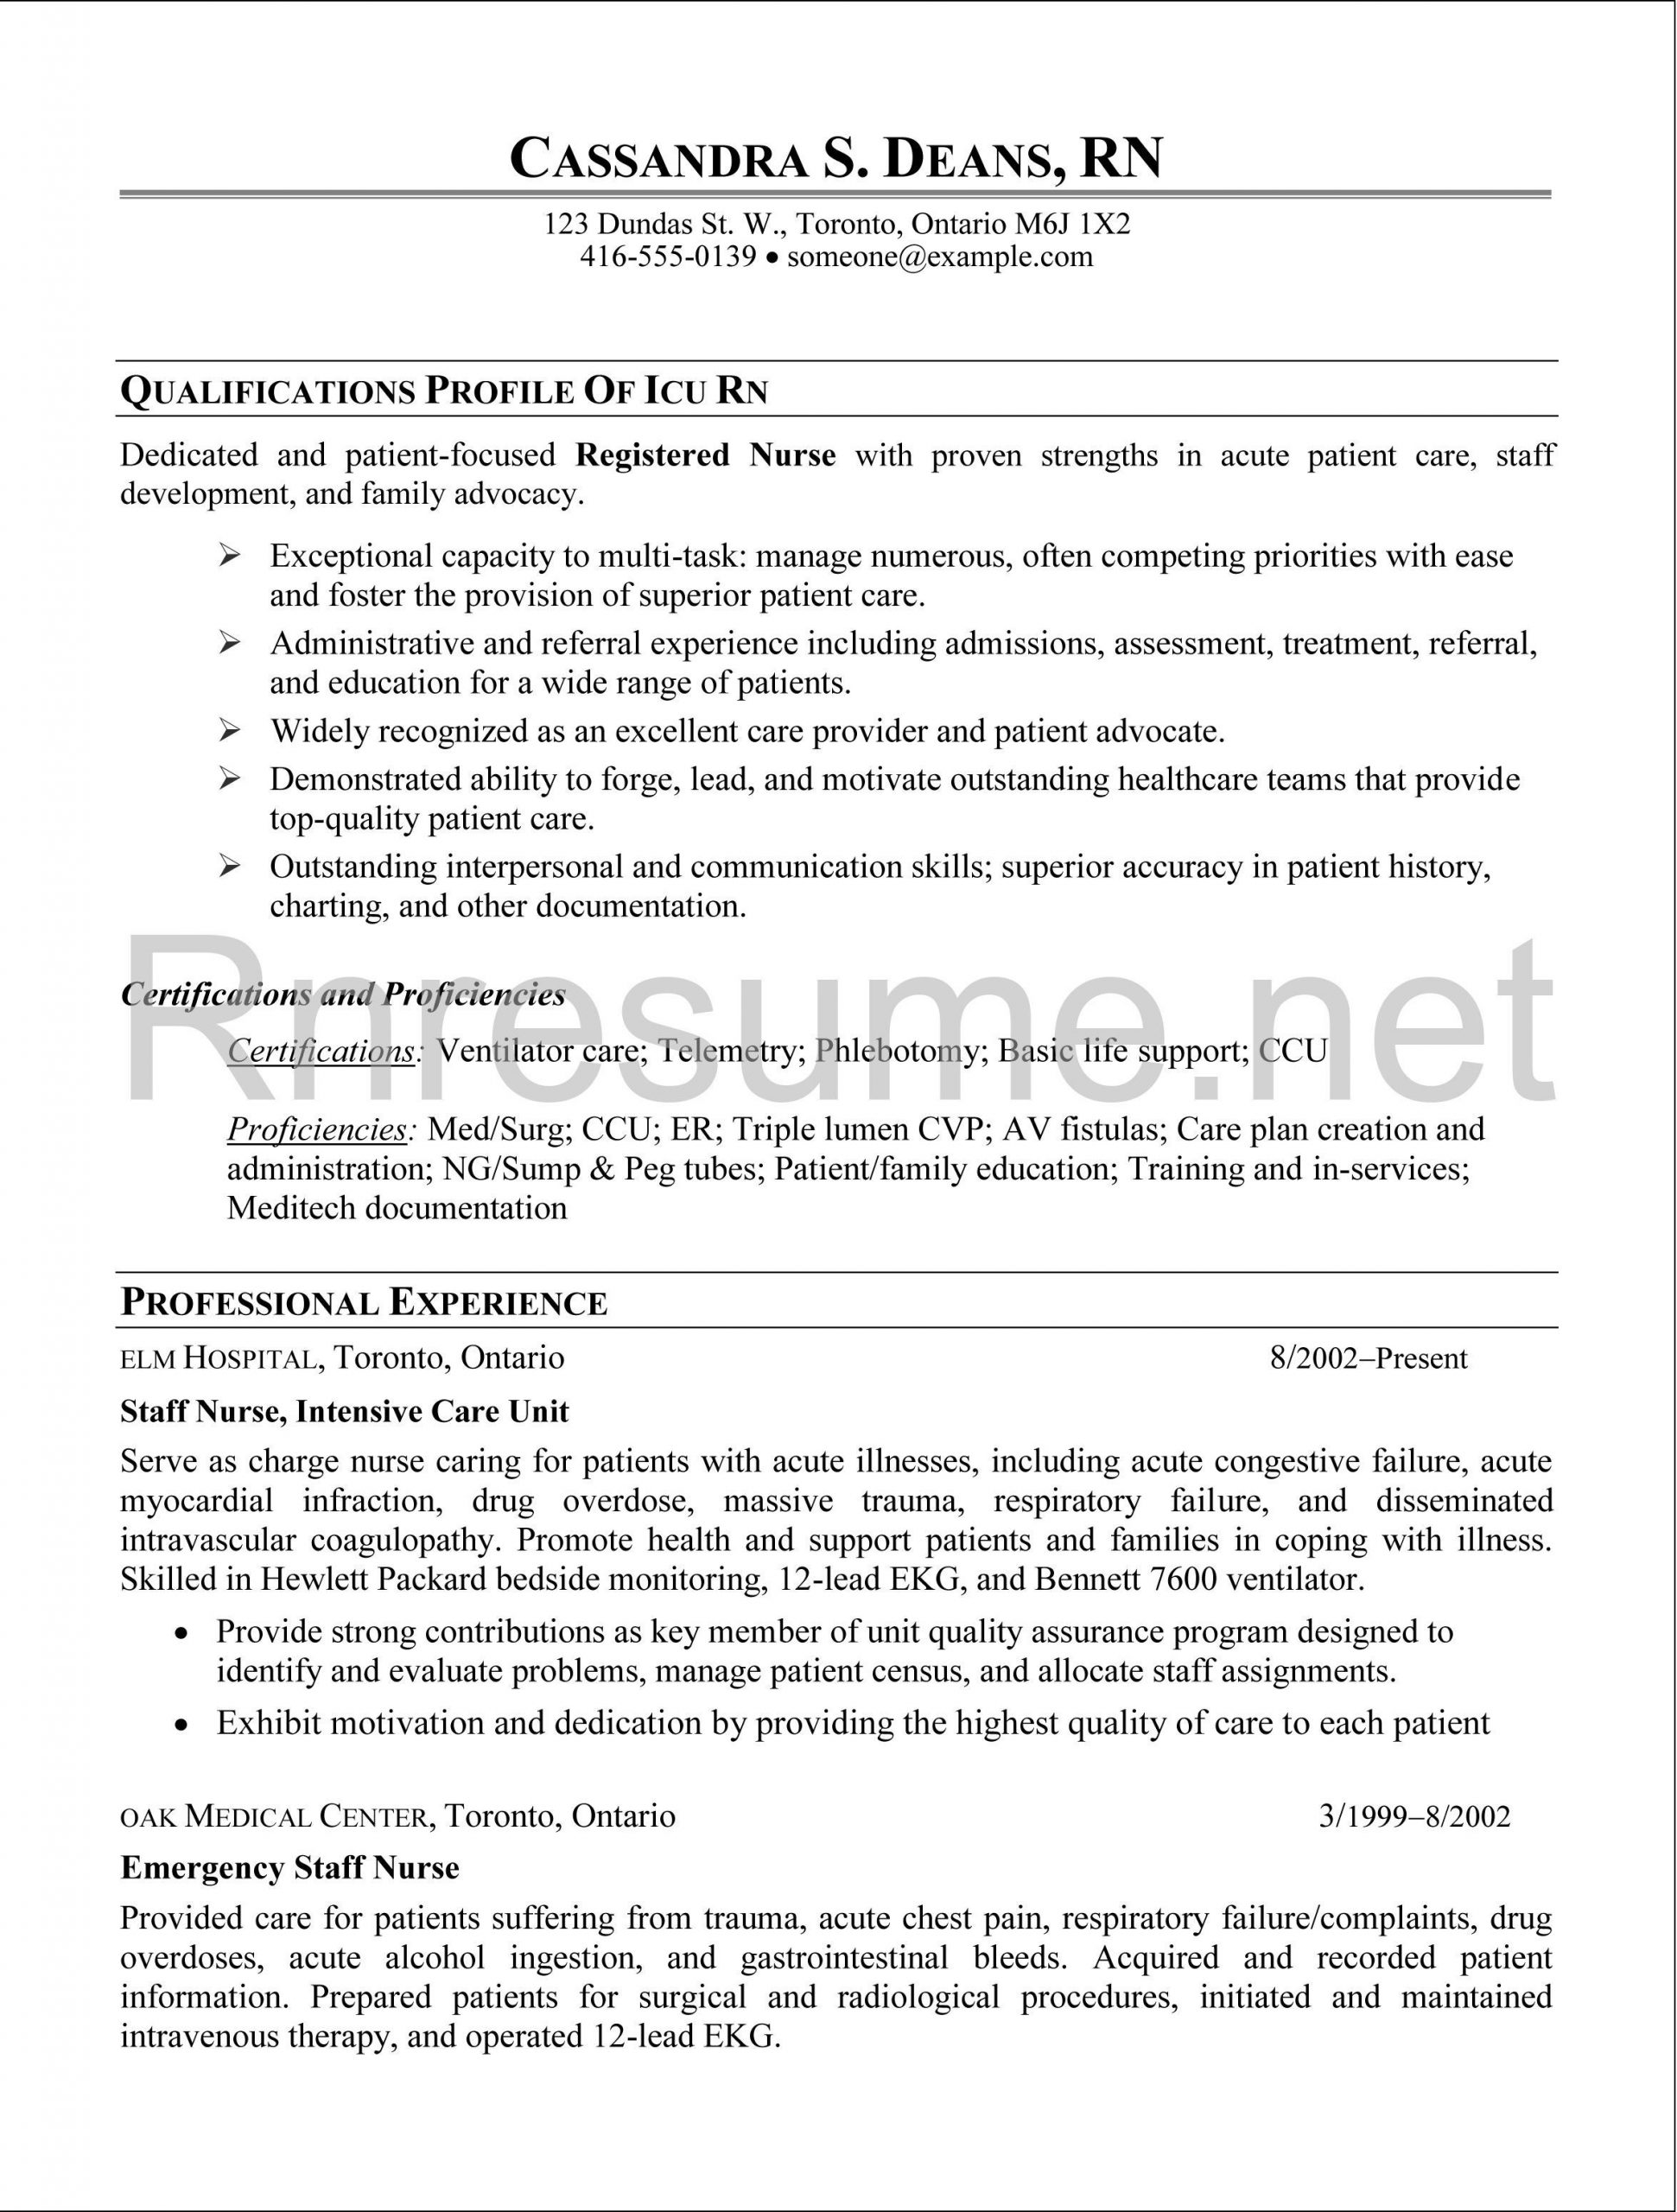 Sample Resume Registered Nurse Med Surg Icu Rn Resume Sample Http://www.rnresume.net/check-our-rn-resume …